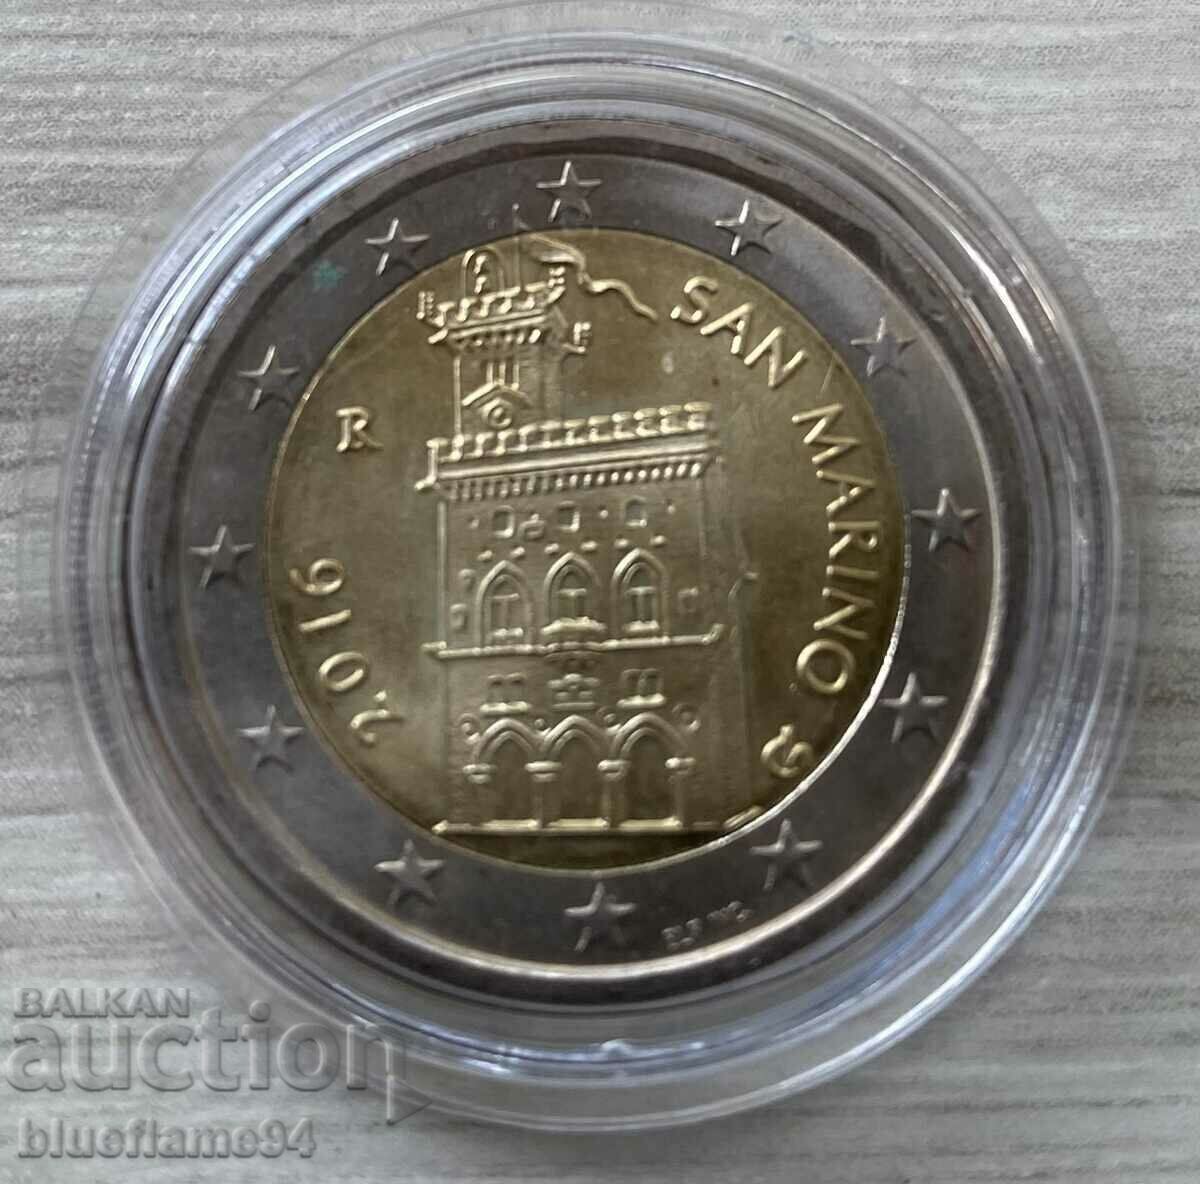 2 ευρώ Σαν Μαρίνο 2016